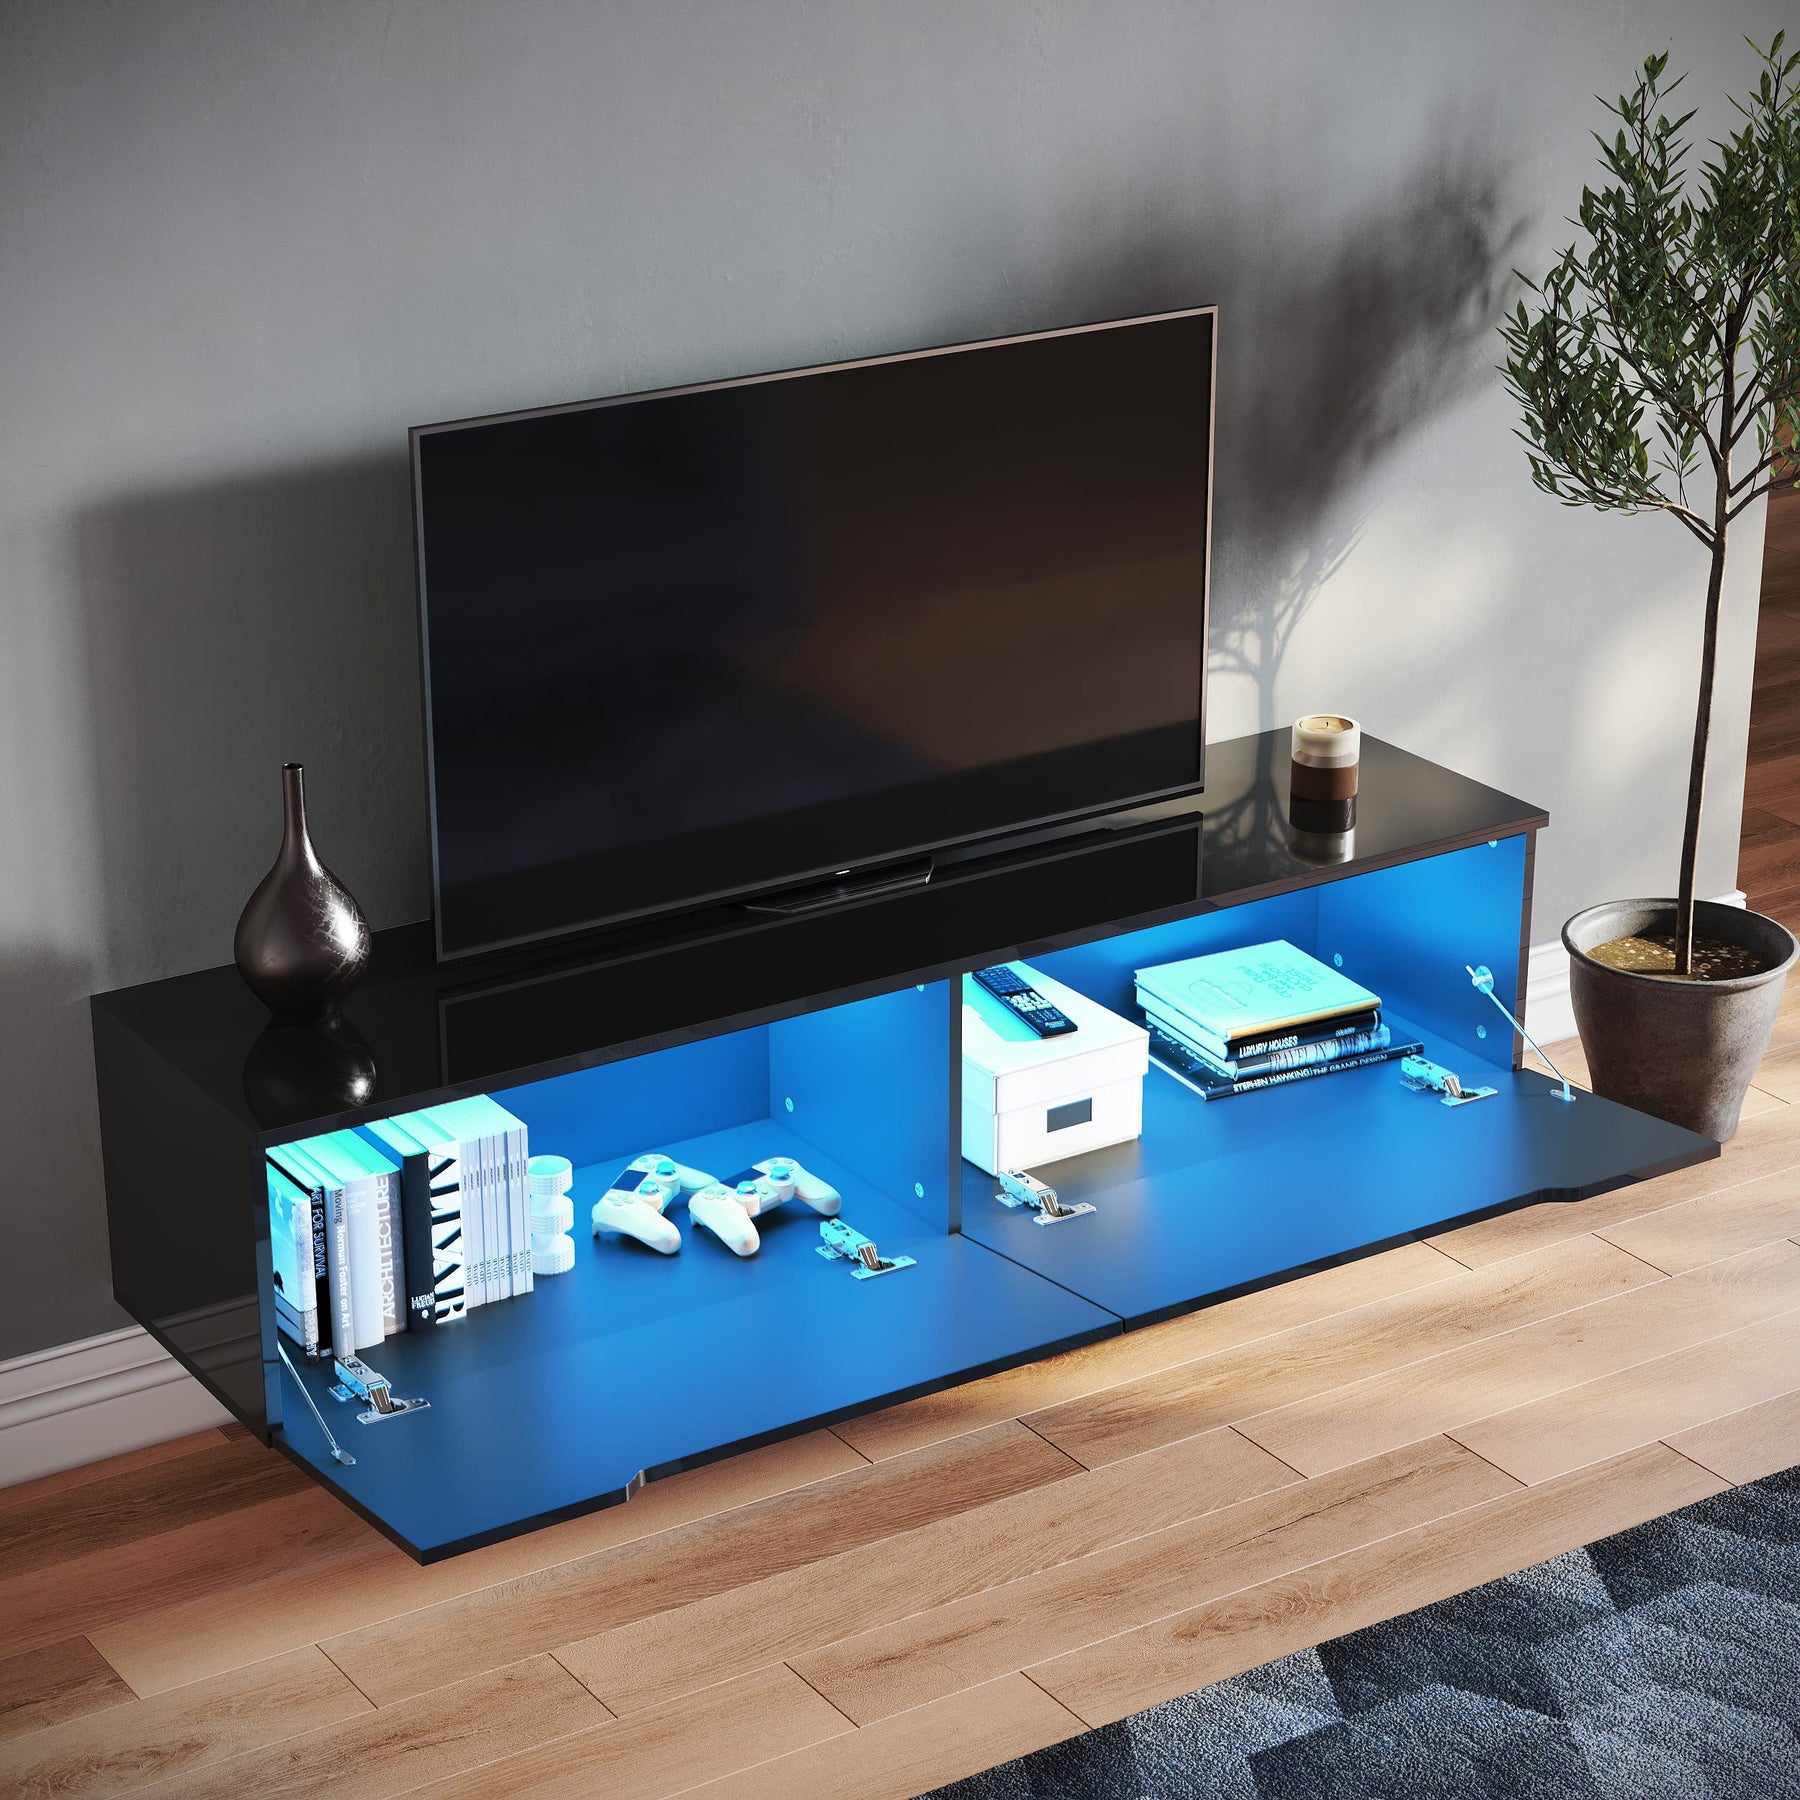 SONNI Lowboard,TV Board weiß/Schwarz hochglänzend hängend TV Schrank mit LED-Beleuchtung (12 Farben einstellbar), griffloses Design